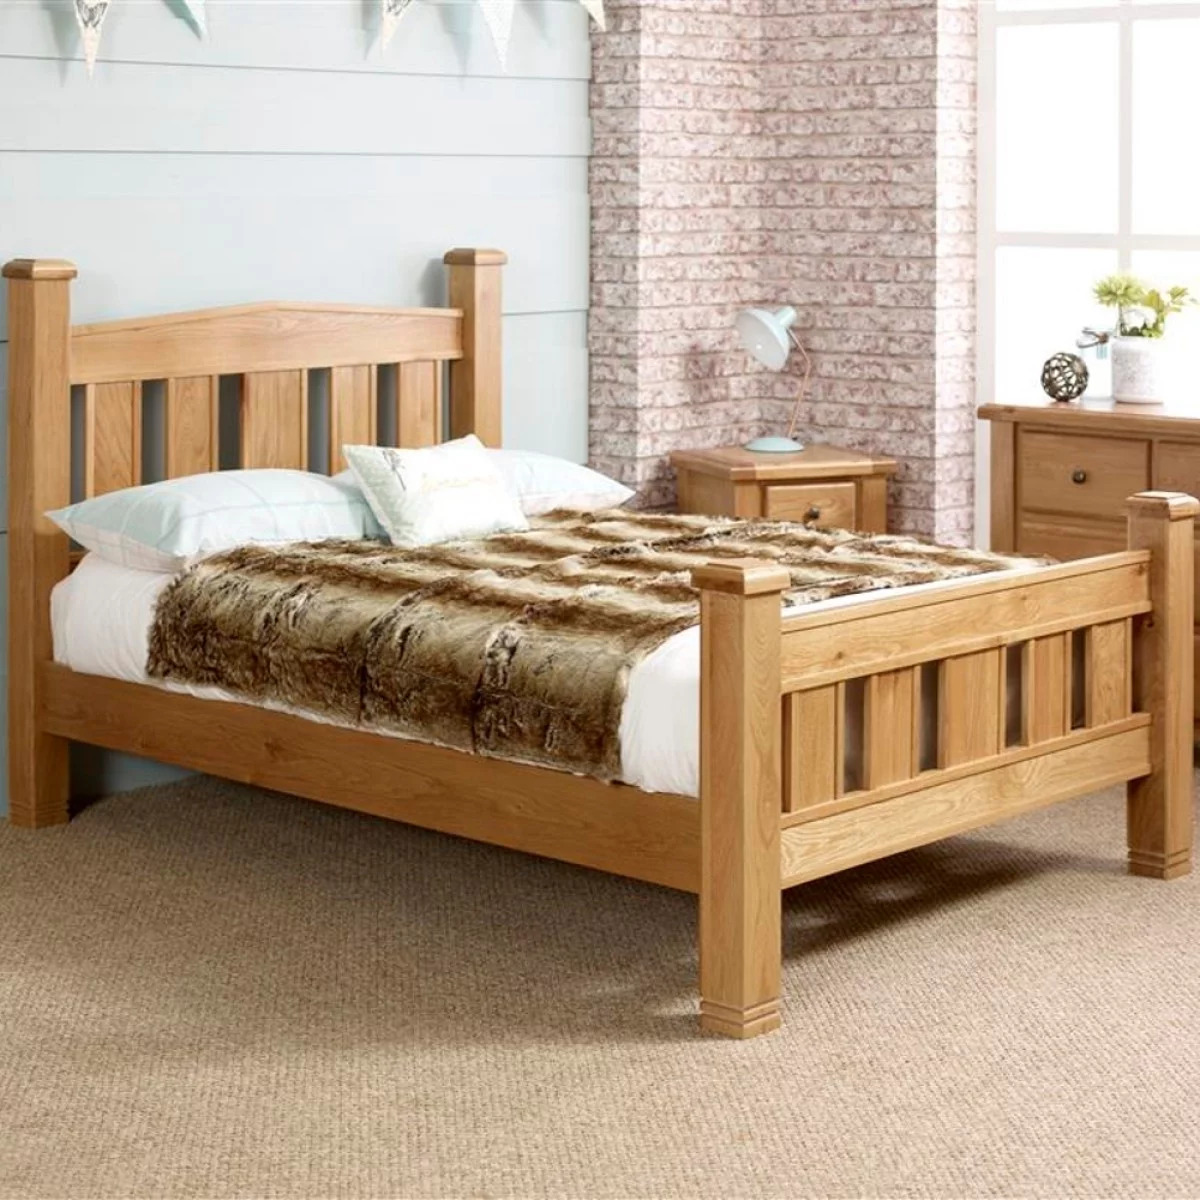 Giường ngủ đơn bằng gỗ công nghiệp có chất lượng không?